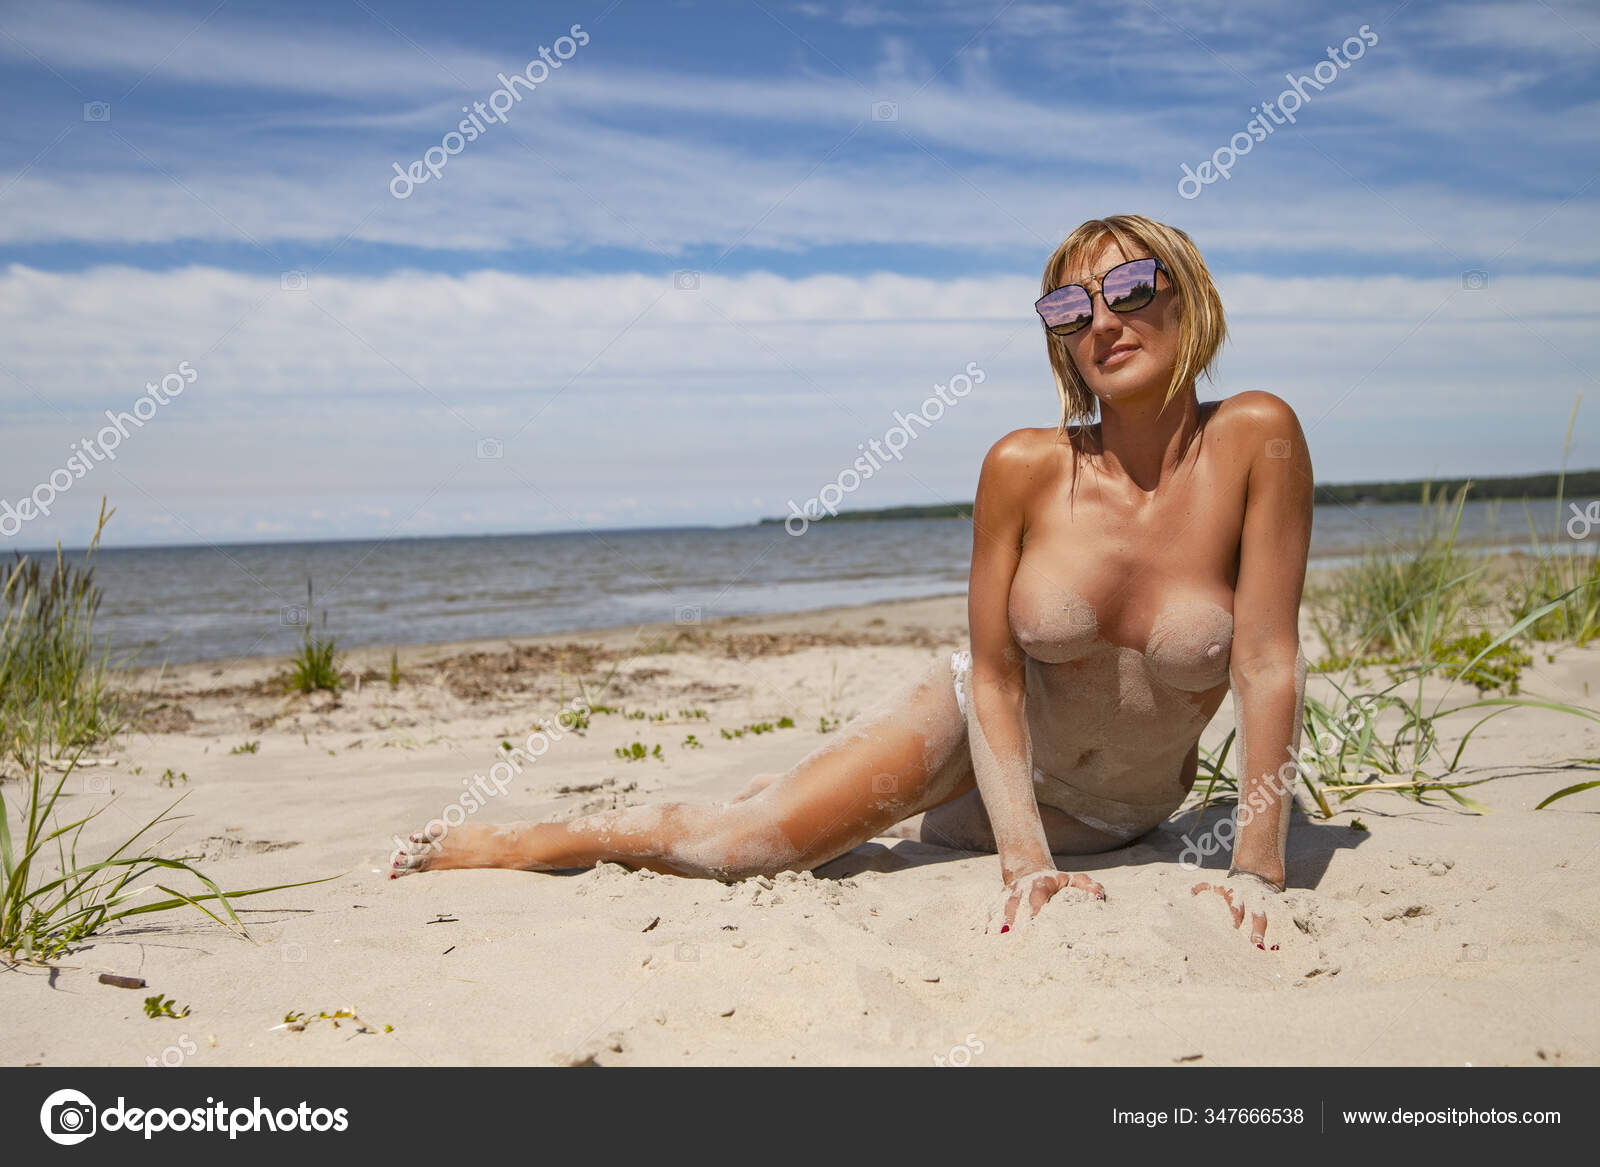 https://st3n.depositphotos.com/2970081/34766/i/1600/depositphotos_347666538-stock-photo-young-sexy-girl-nude-beautiful.jpg